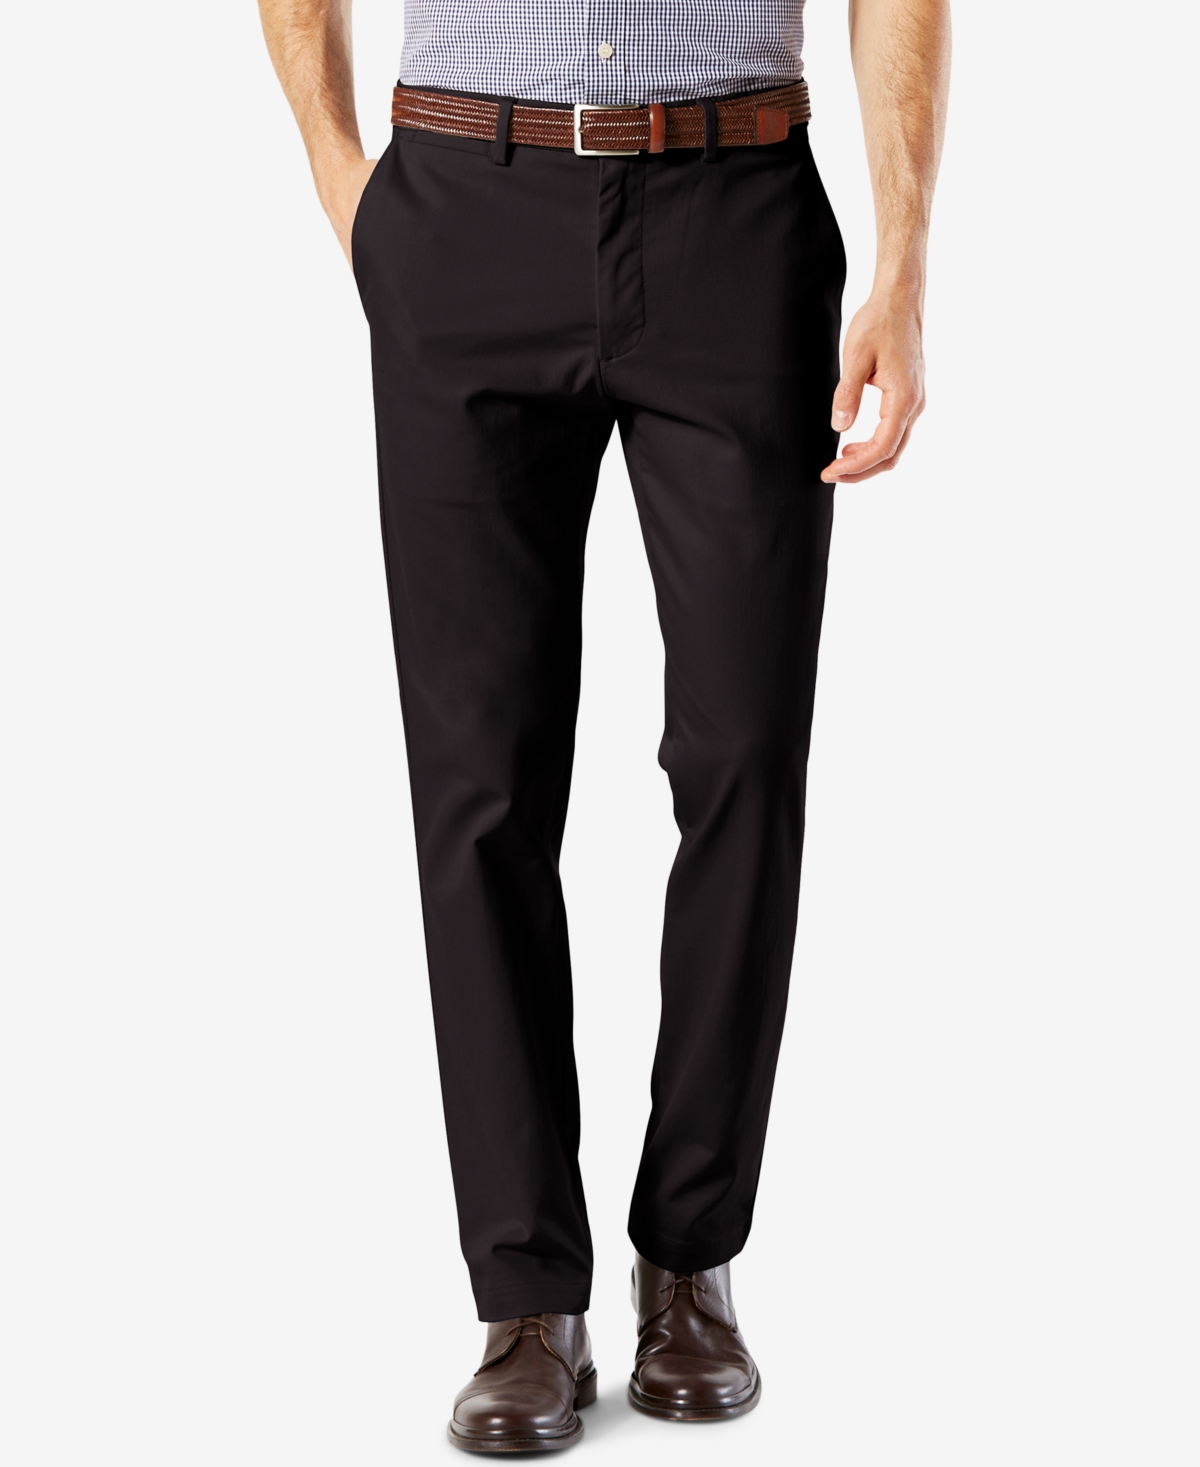 Dockers Men's Signature Lux Cotton Slim Fit Stretch Khaki Pants & Reviews -  Pants - Men - Macy's